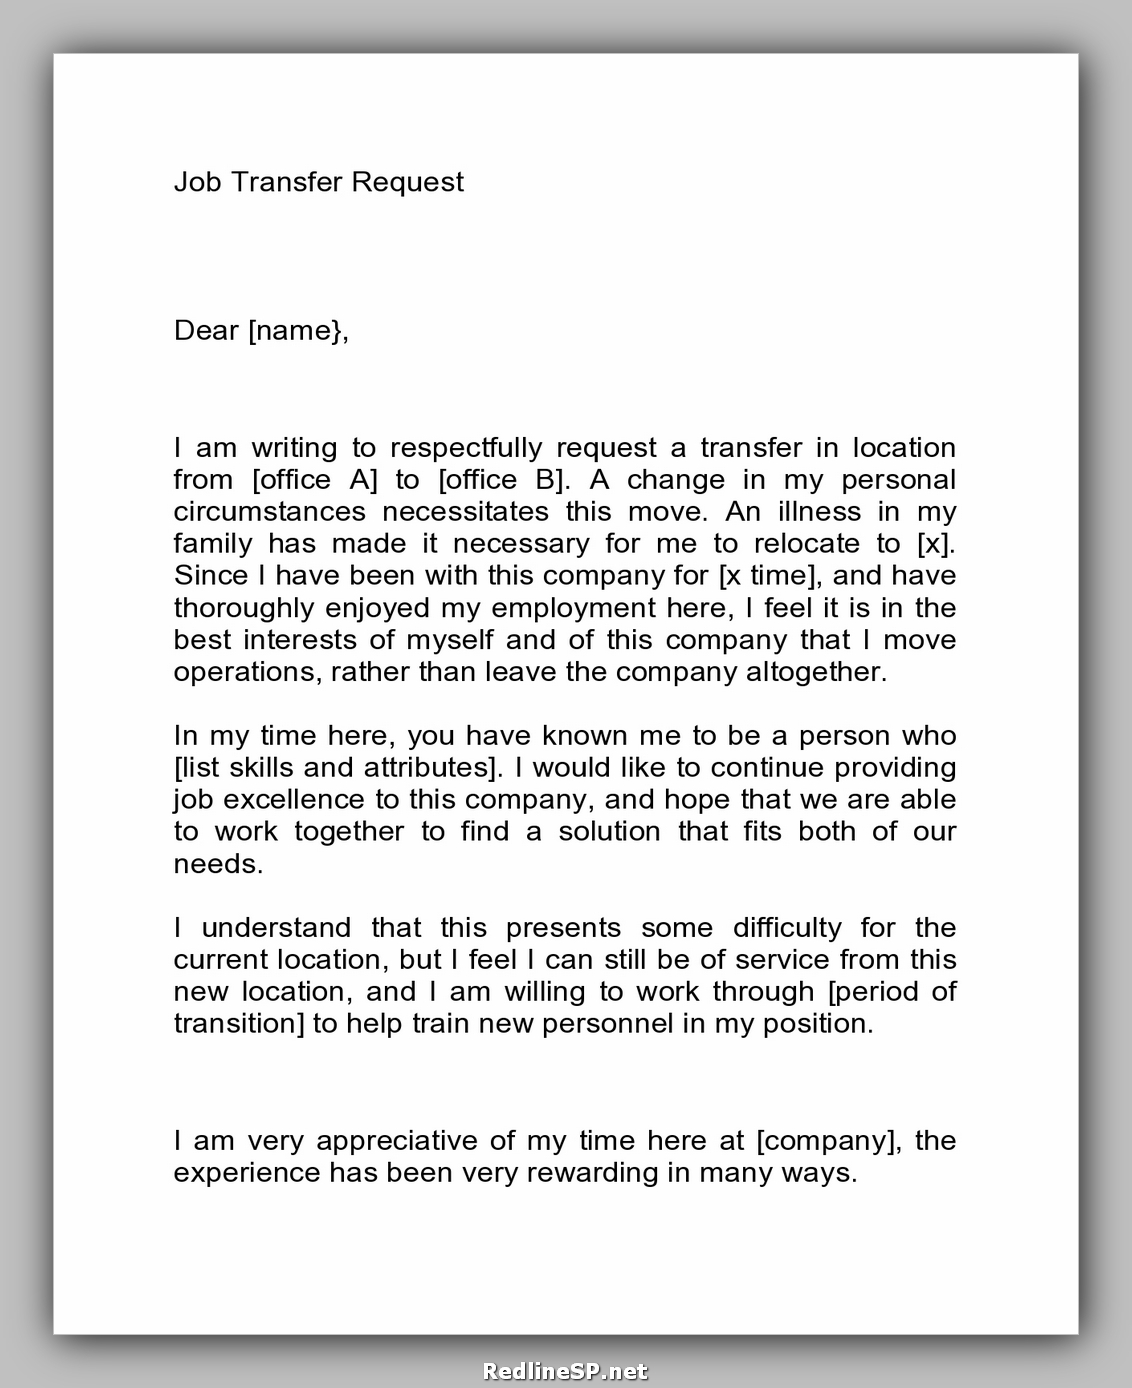 application letter for job transfer sample